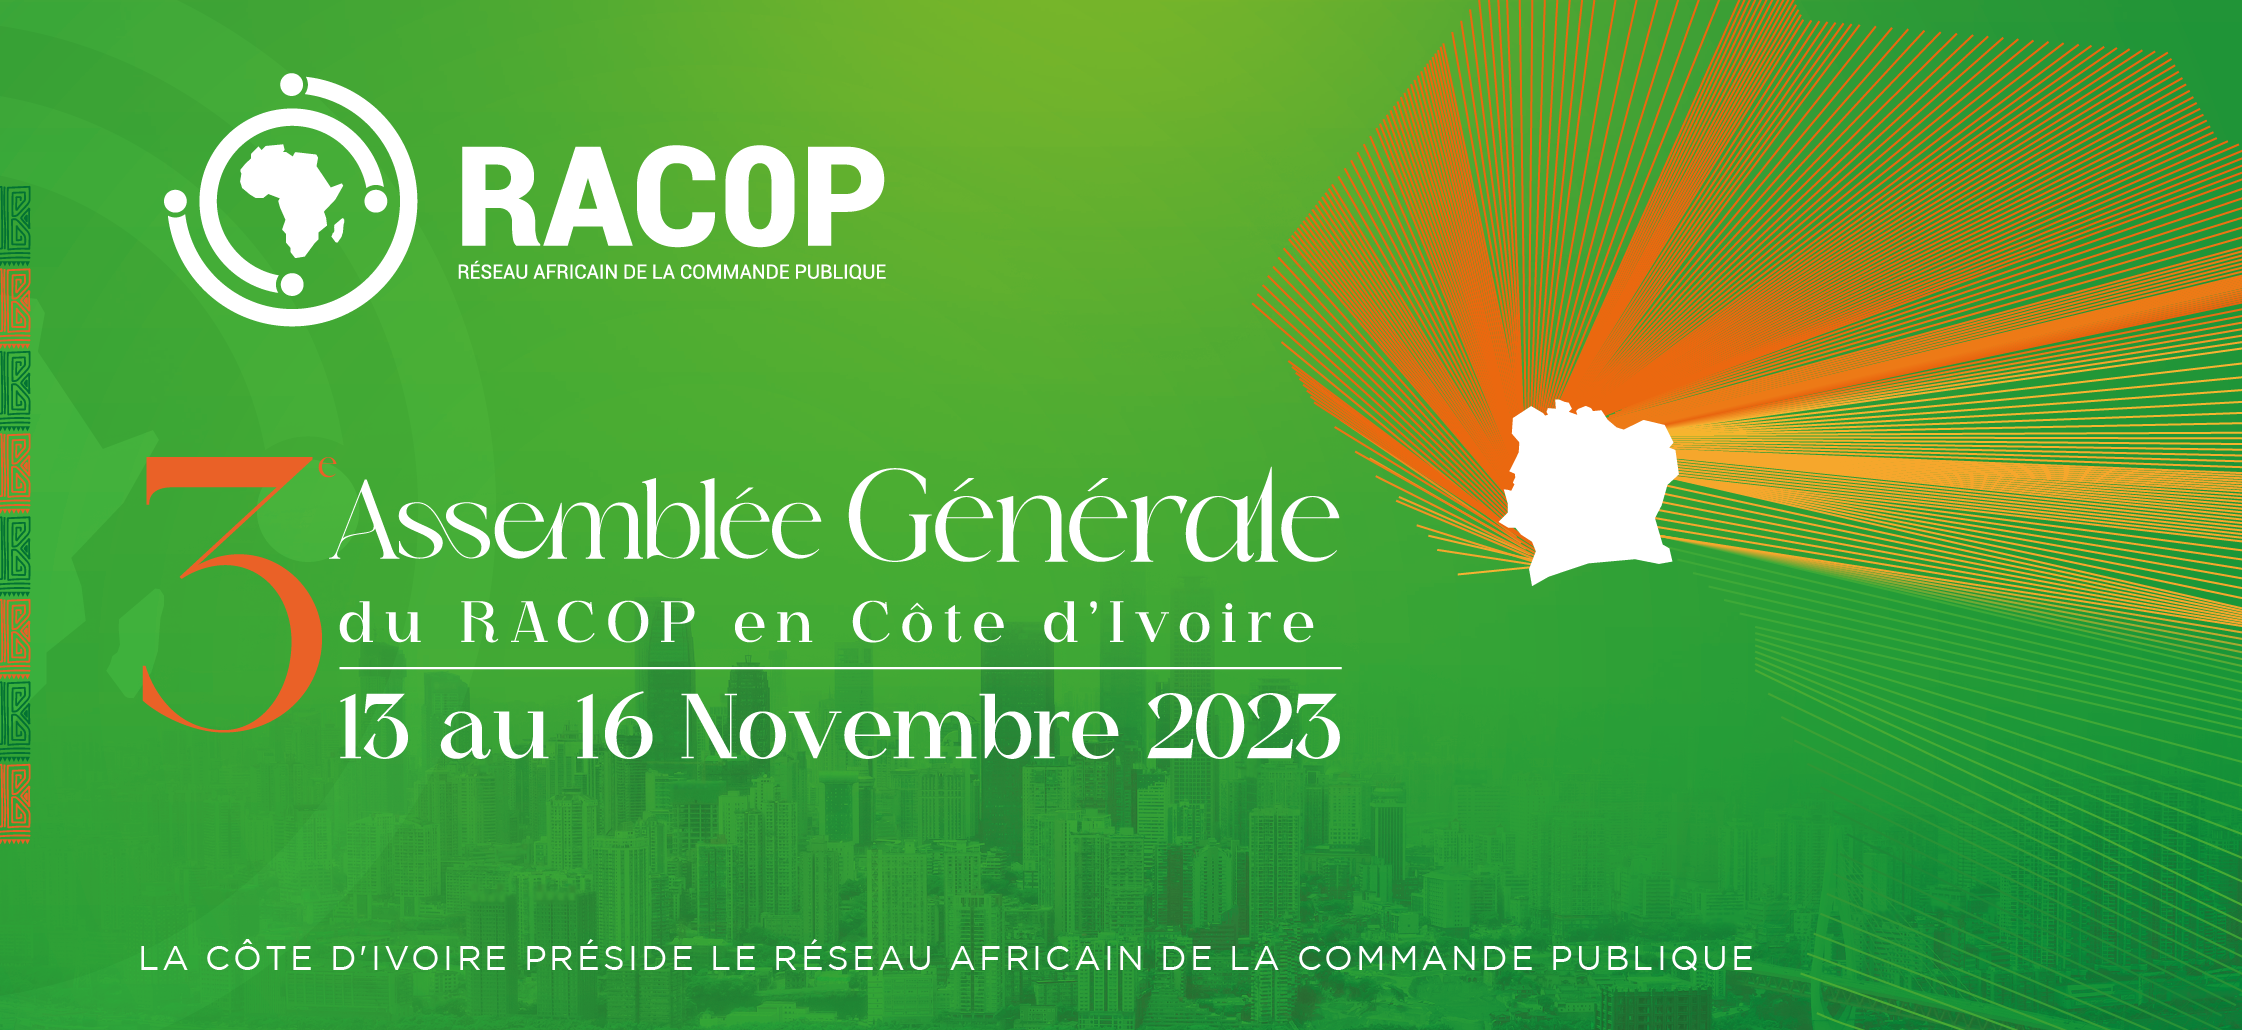 La Côte d'Ivoire accueille la 3ème Assemblée Générale du RACOP